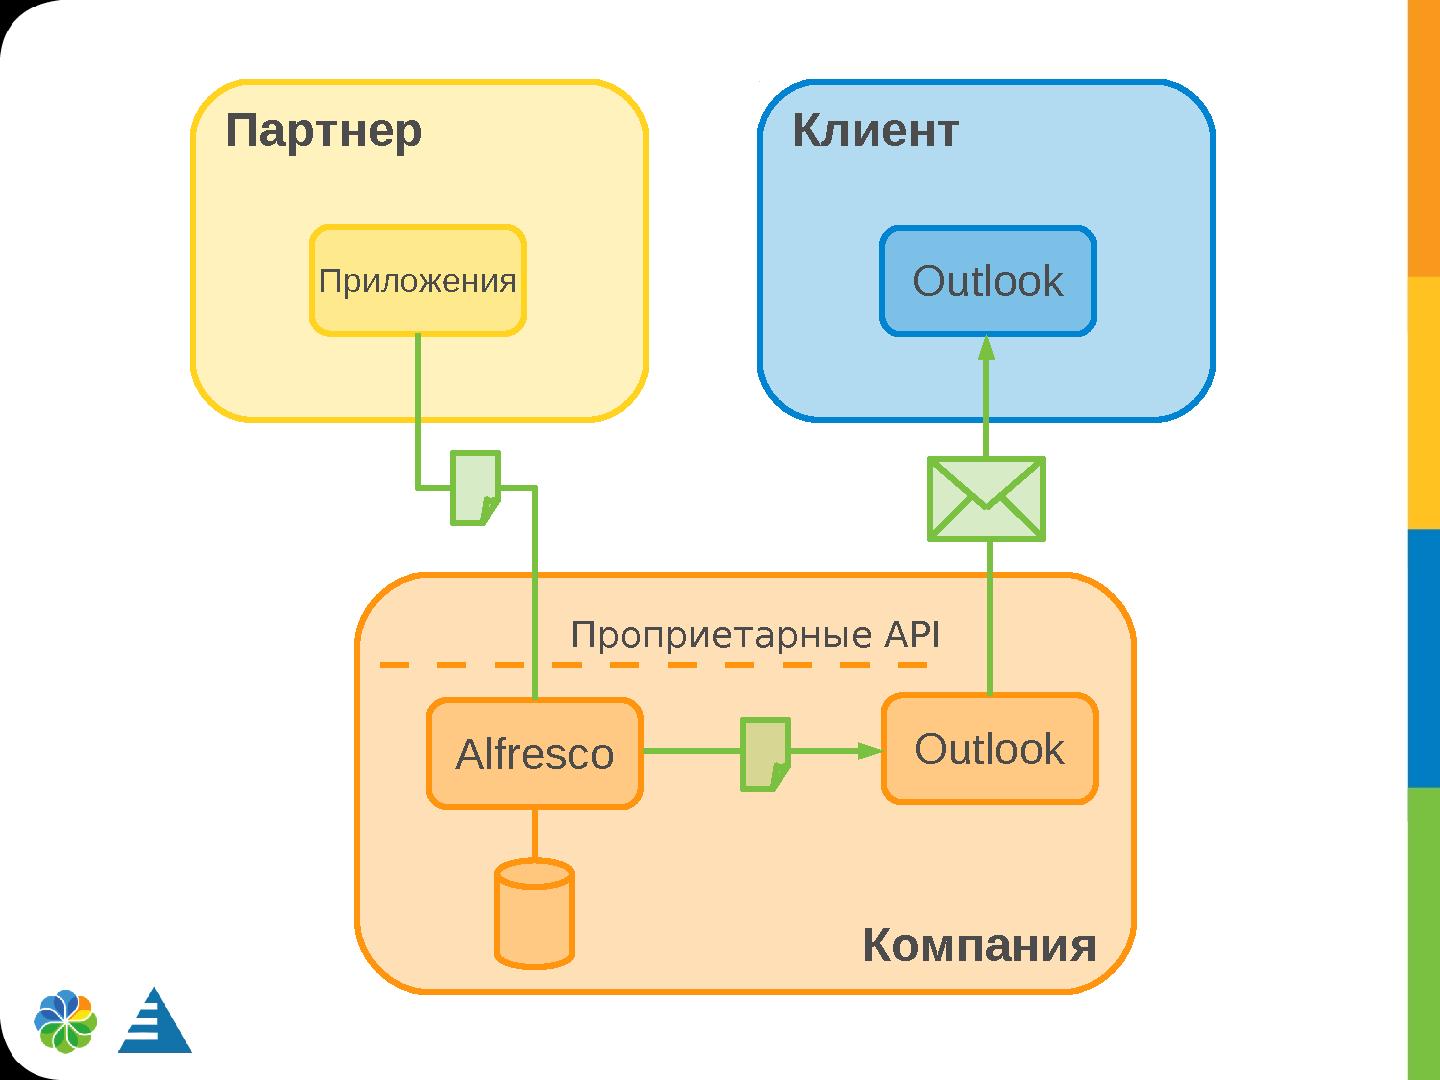 Файл:Применение открытых стандартов для построения гетерогенных систем (Алексей Ермаков, ROSS-2014).pdf